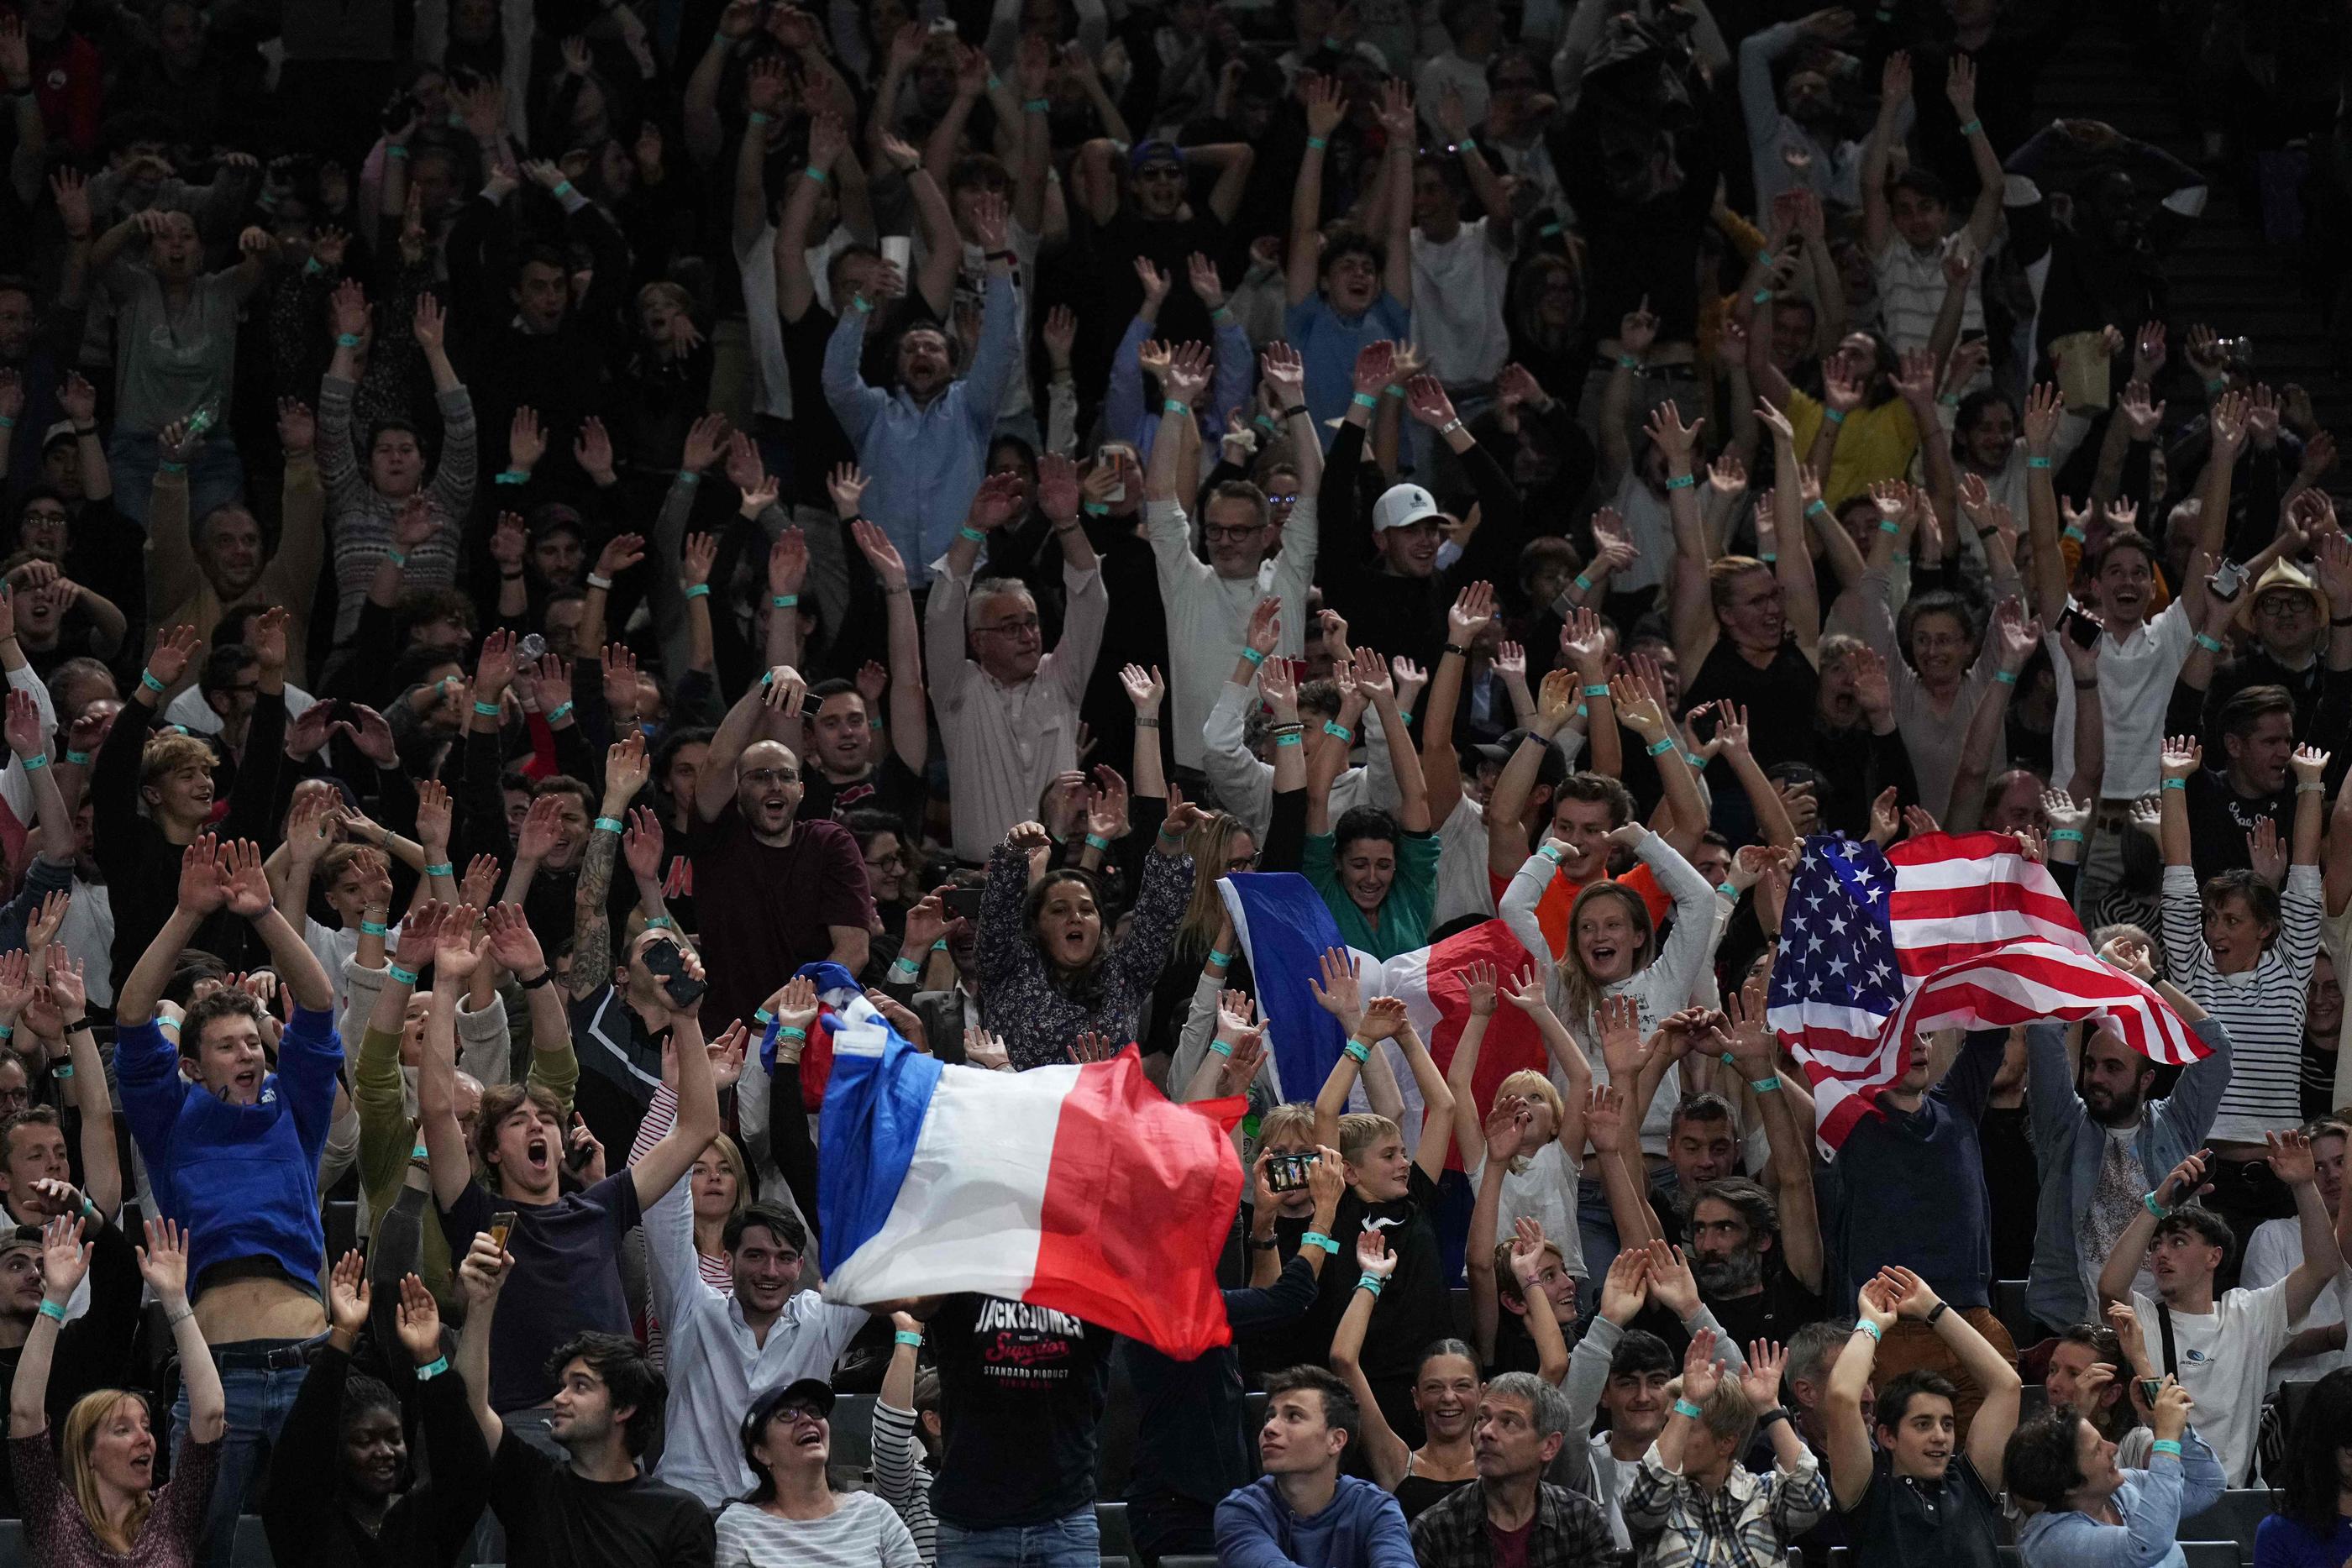 Bercy a souvent été le théâtre de chaudes ambiances, portant les joueurs français comme lundi soir pour le match de Richard Gasquet. AFP/Dimitar Dilkoff